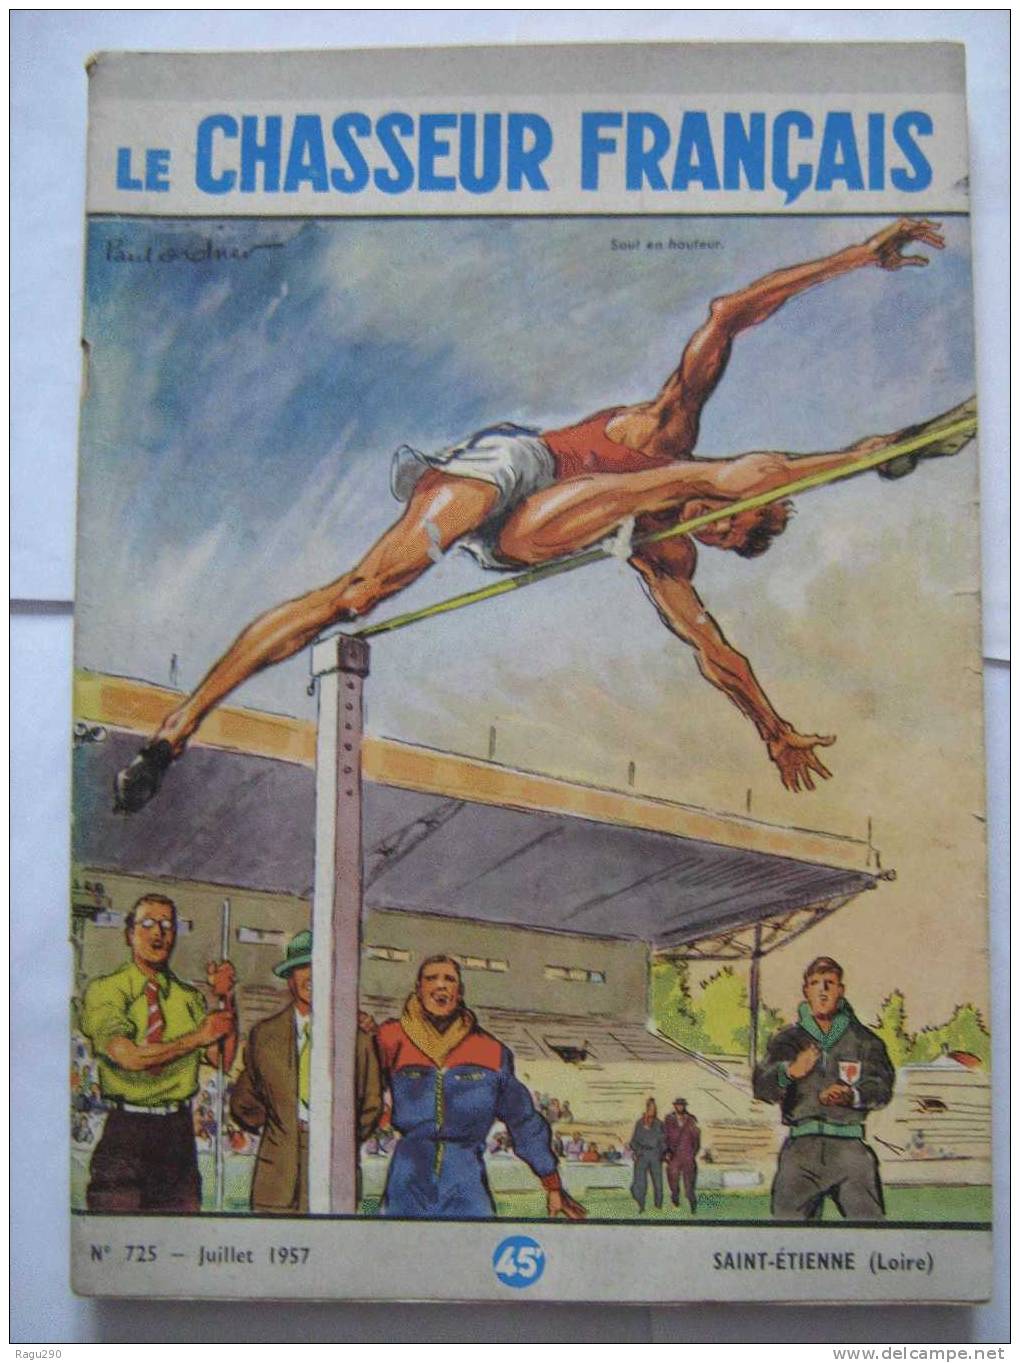 LE CHASSEUR FRANCAIS N° 725 Illustré Par  PAUL ORDNER -- Saut En Hauteur  -- Juillet 1957 - Fischen + Jagen